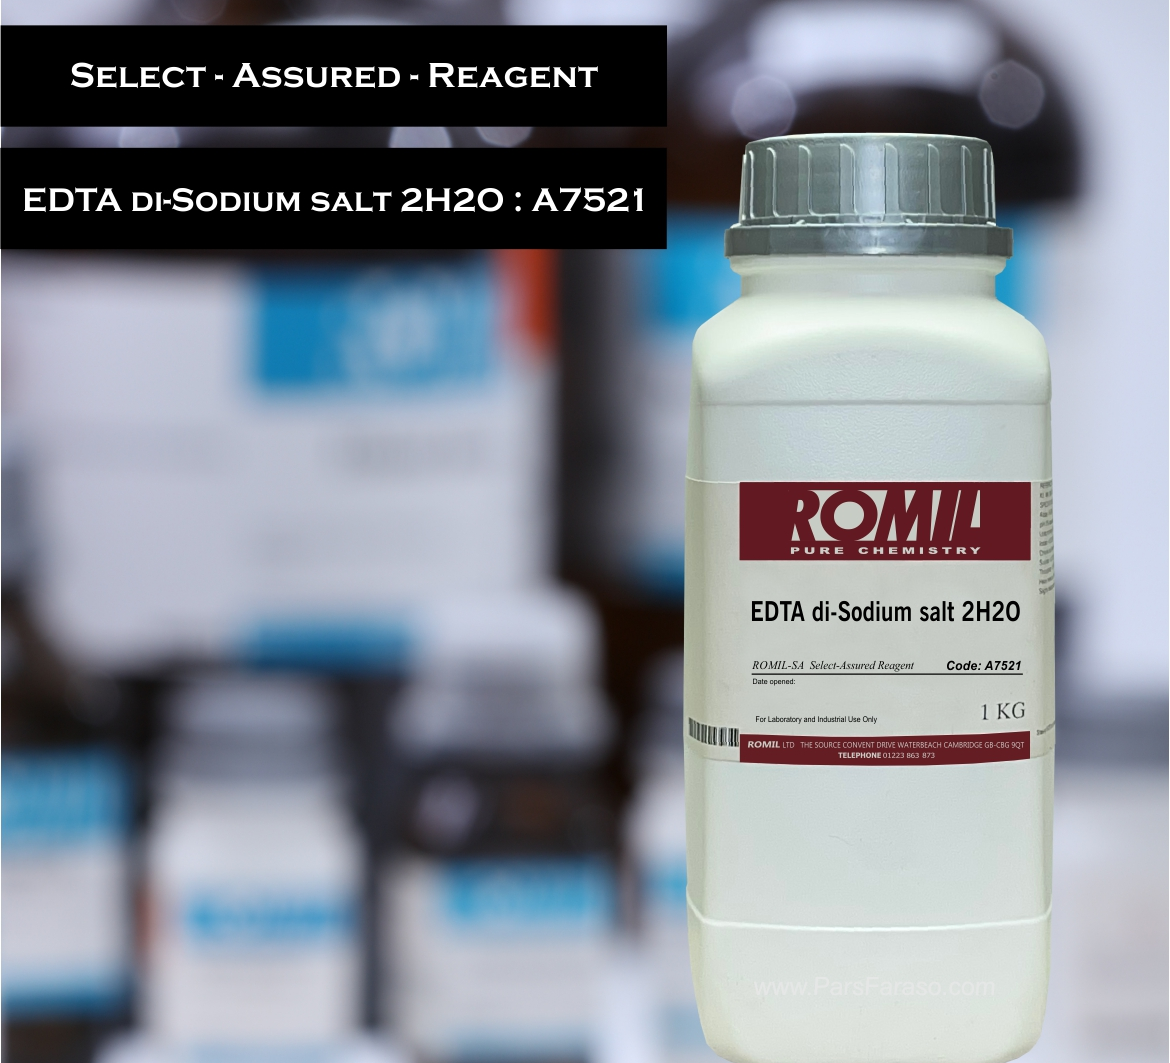 ای دی تی آ کد کاتالوگ روميل A7521 - خرید و فروش مواد شیمیایی